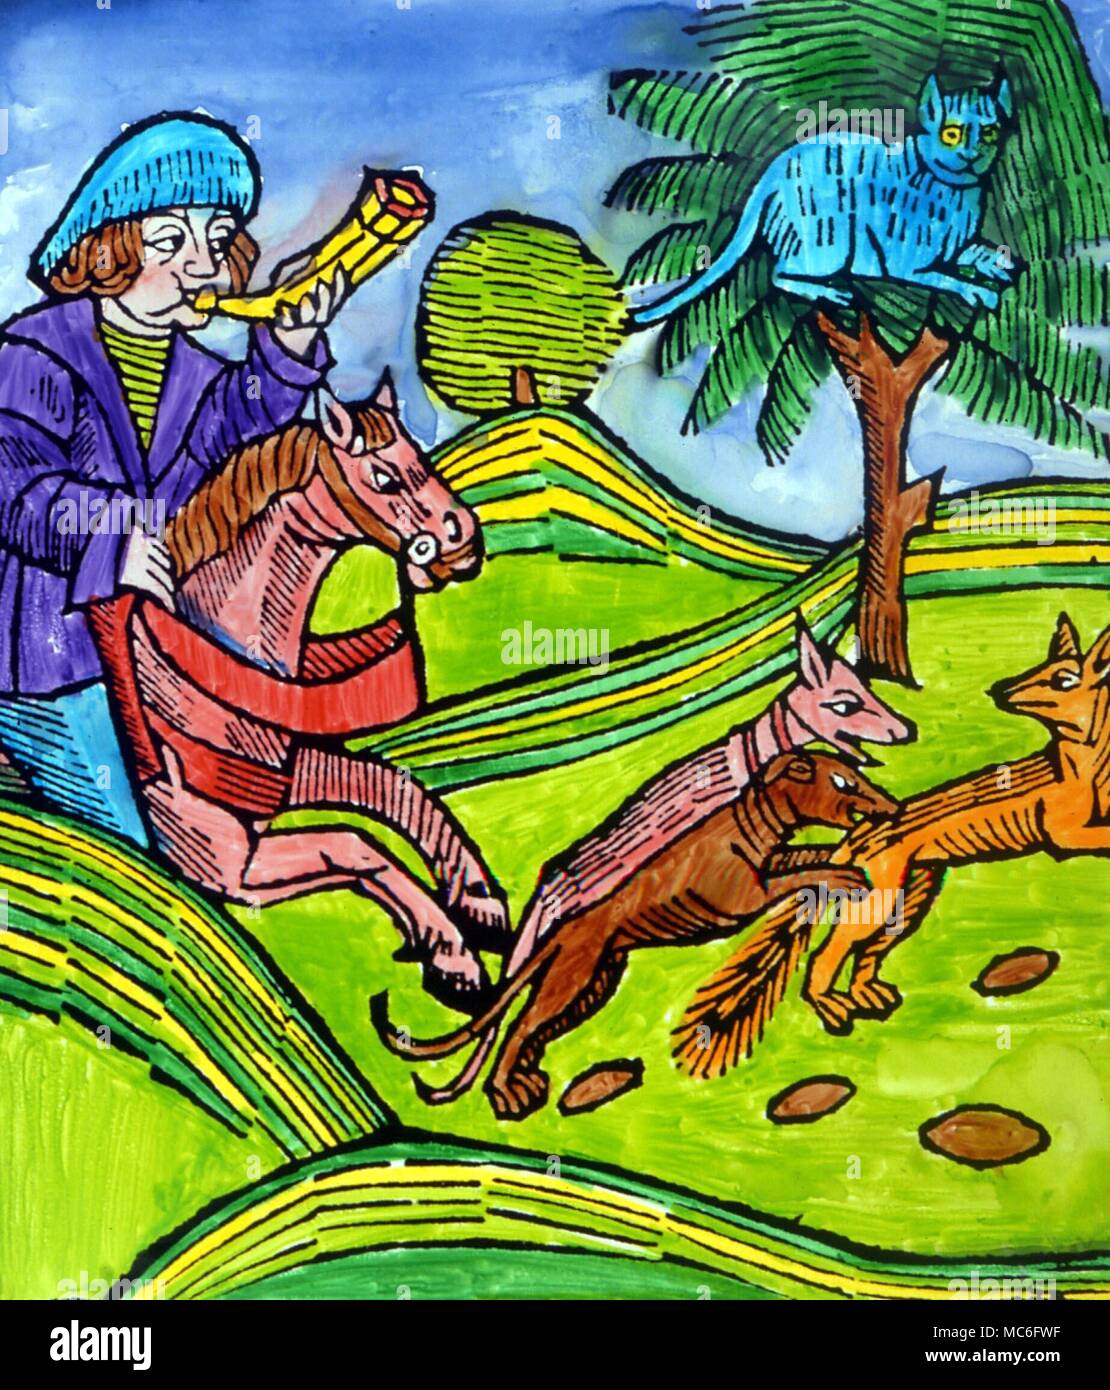 Cat y Fox - Ilustración (siglo xvi) a la fábula de Esopo acerca del gato y el zorro Foto de stock